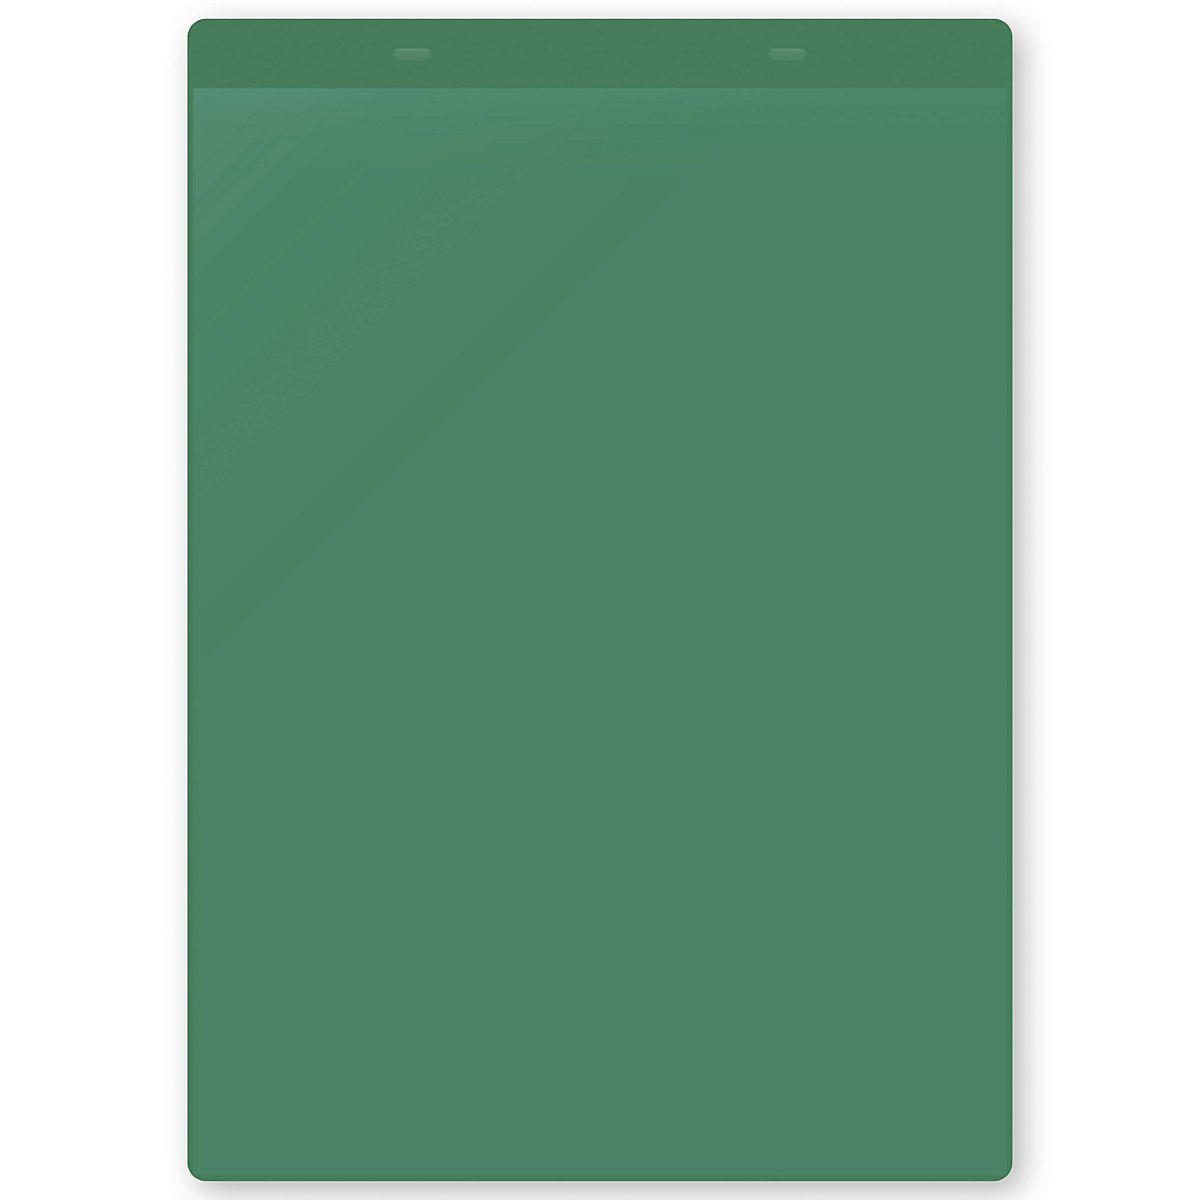 Dokumentumtartó tasakok akasztópánttal, DIN A4, álló, cs. e. 50 db, zöld